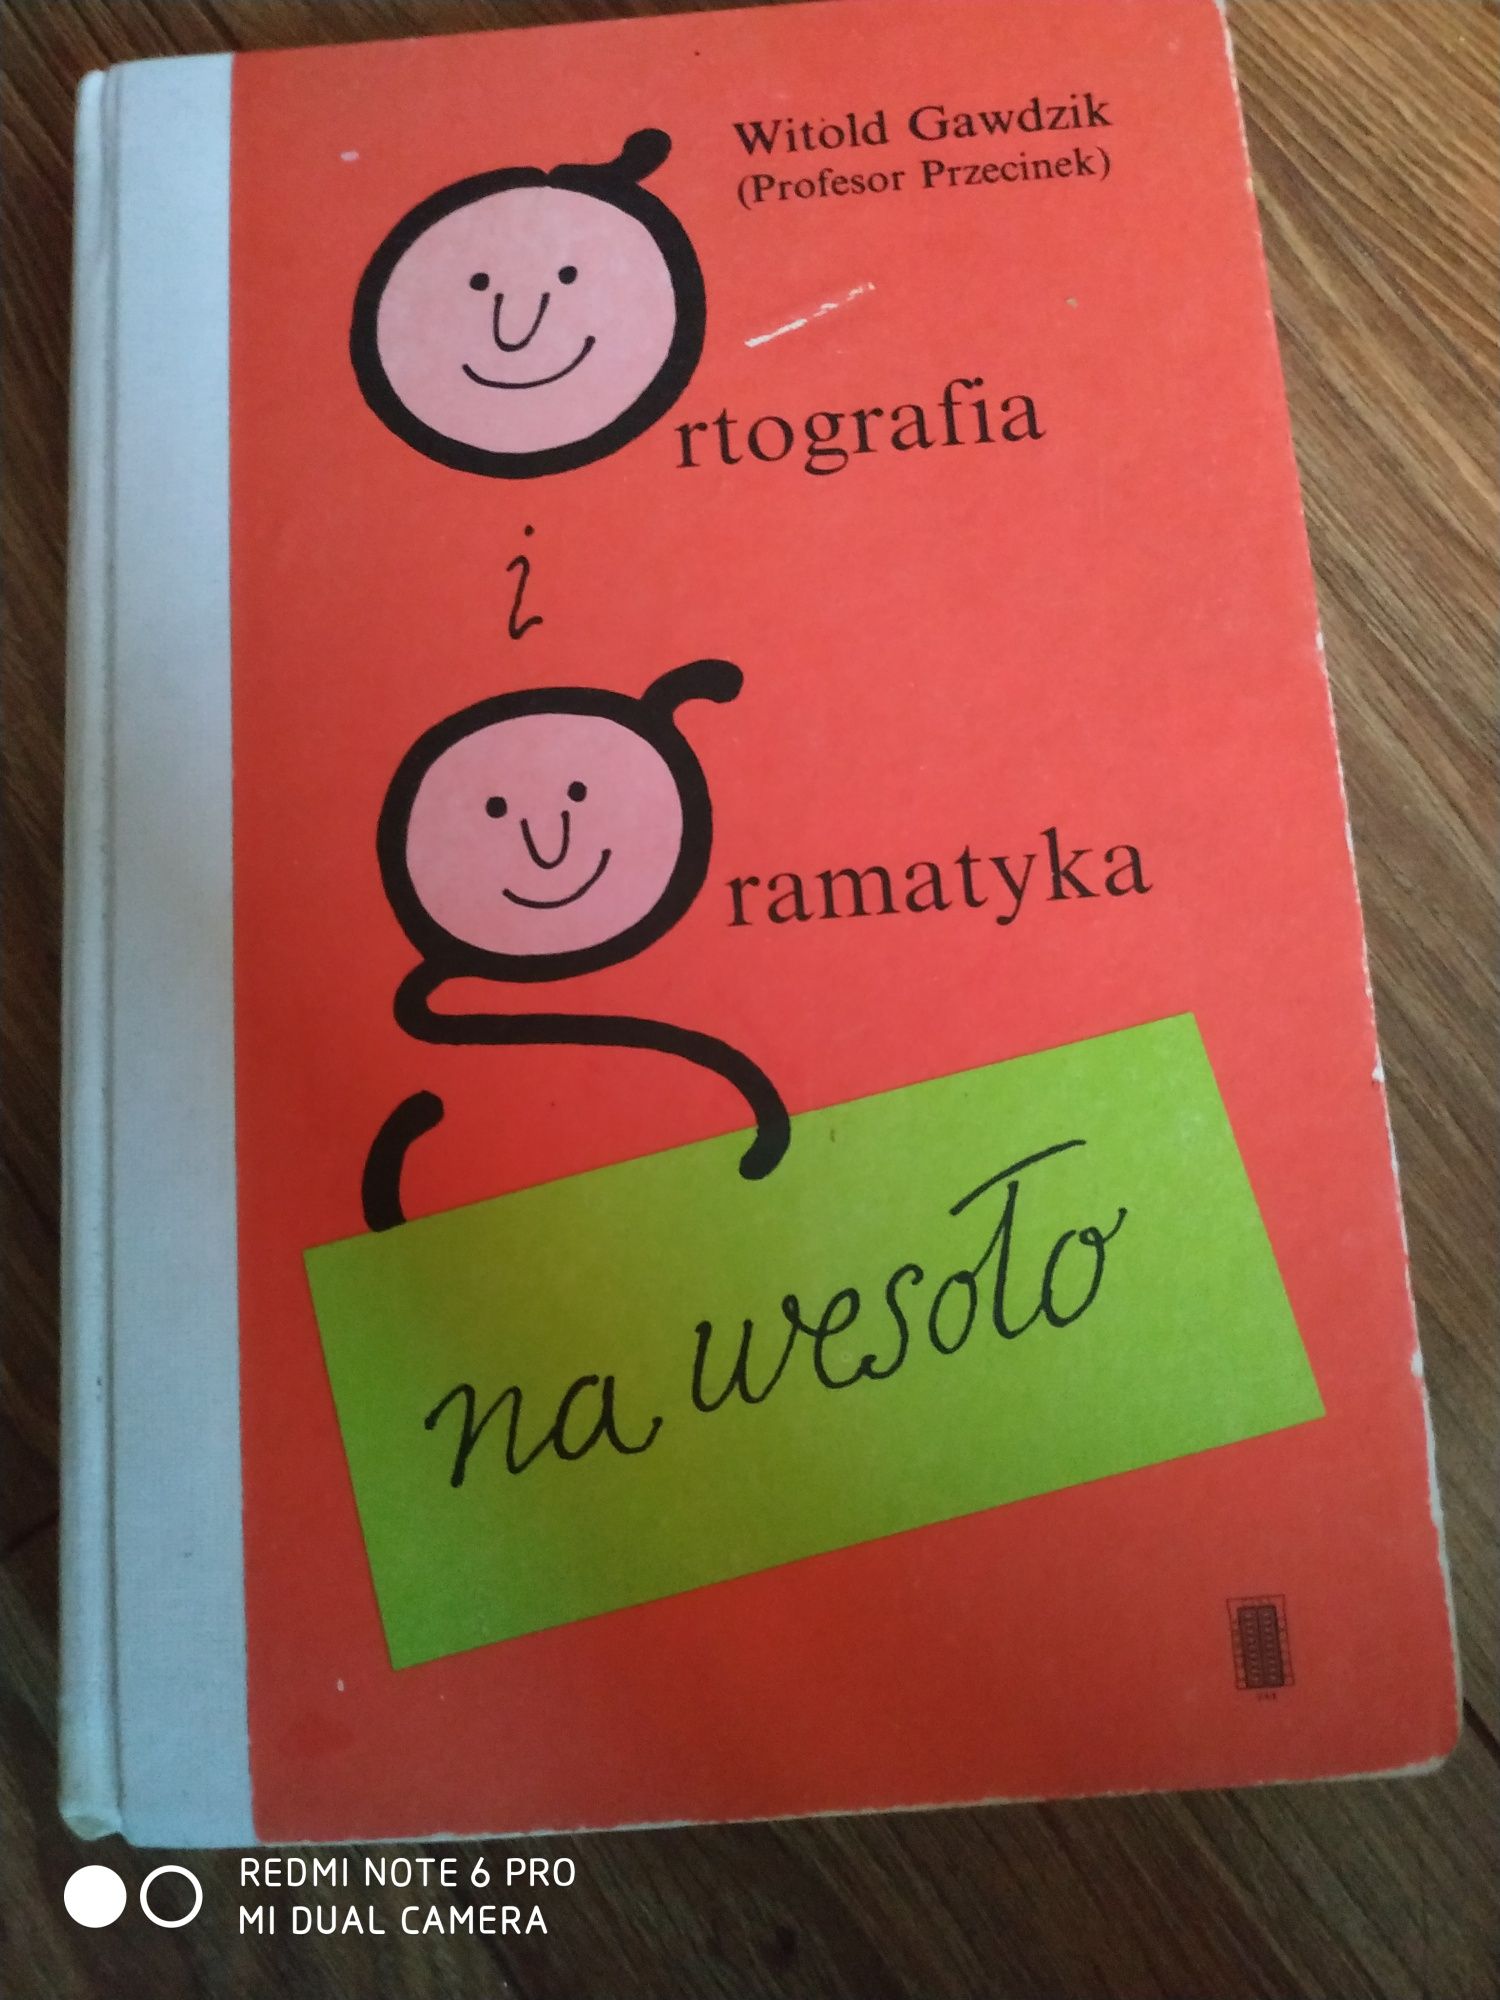 Ortografia i gramatyka na wesoło. Witold gawdzik. 1990